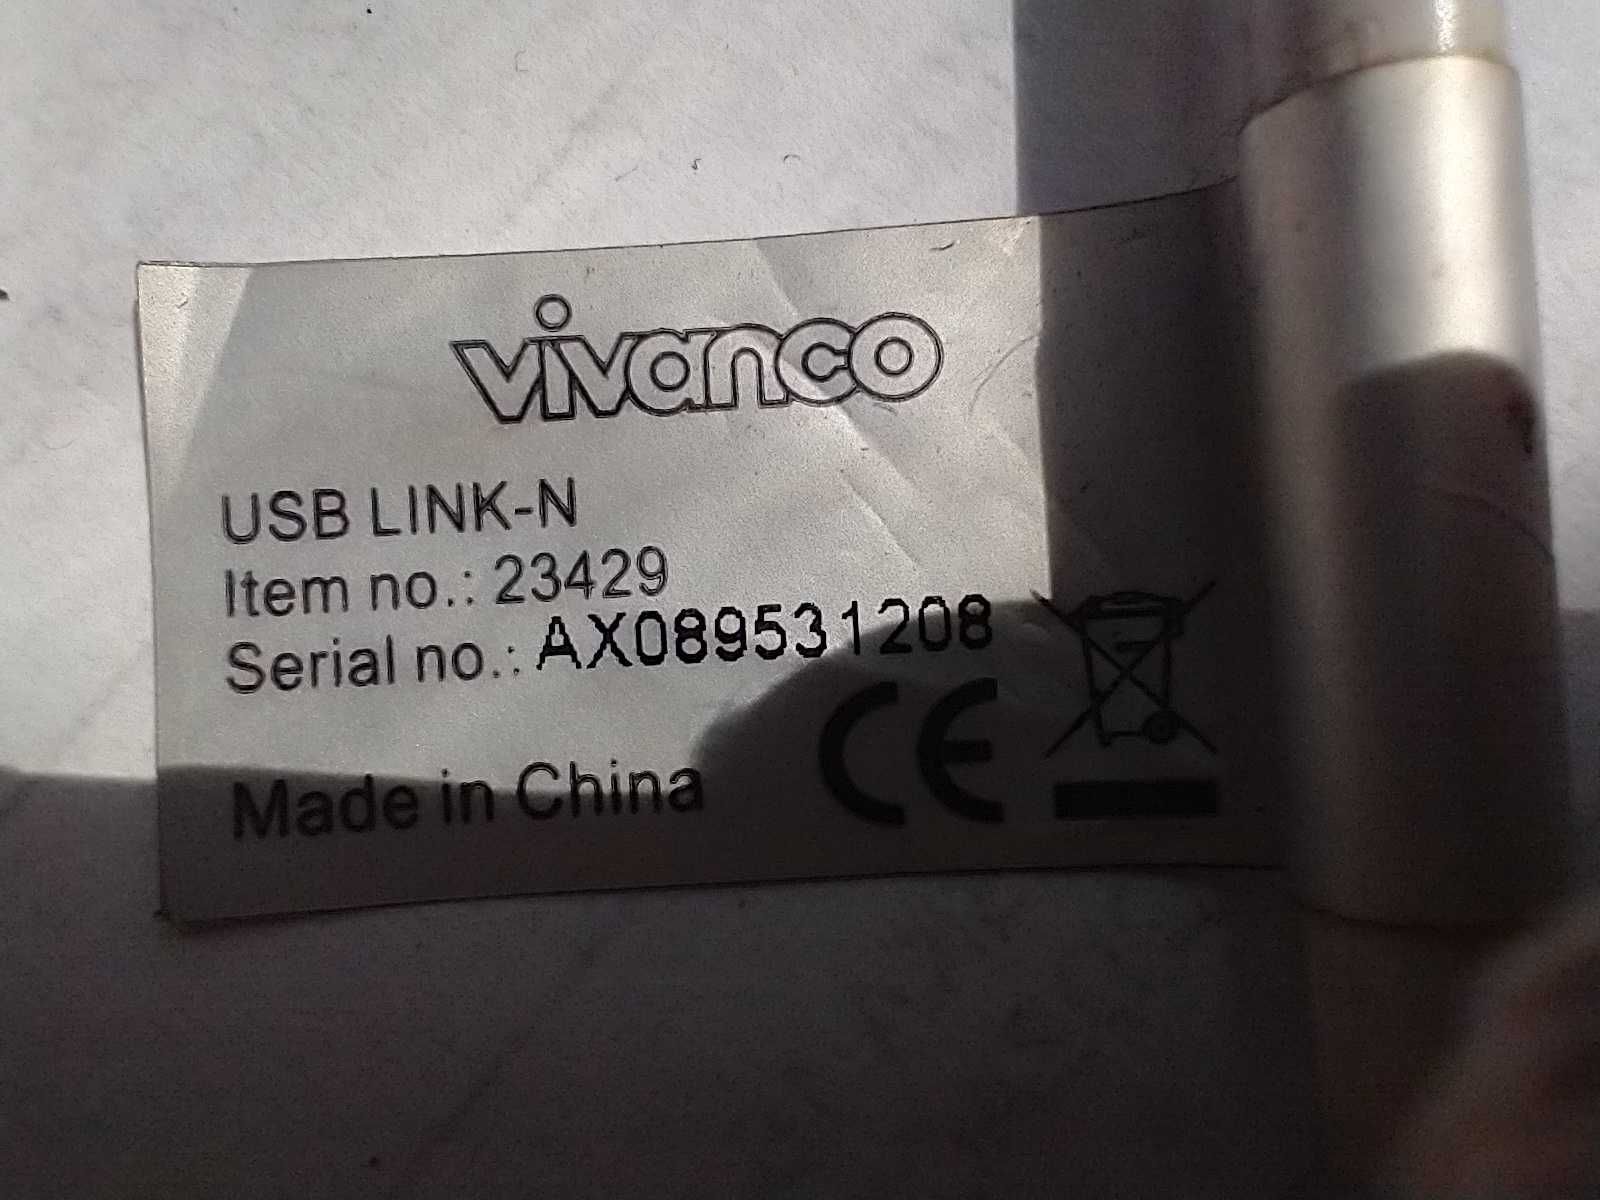 Przejściówka N- link- N USB-USB  Vivanco . połacz komputery przez USB